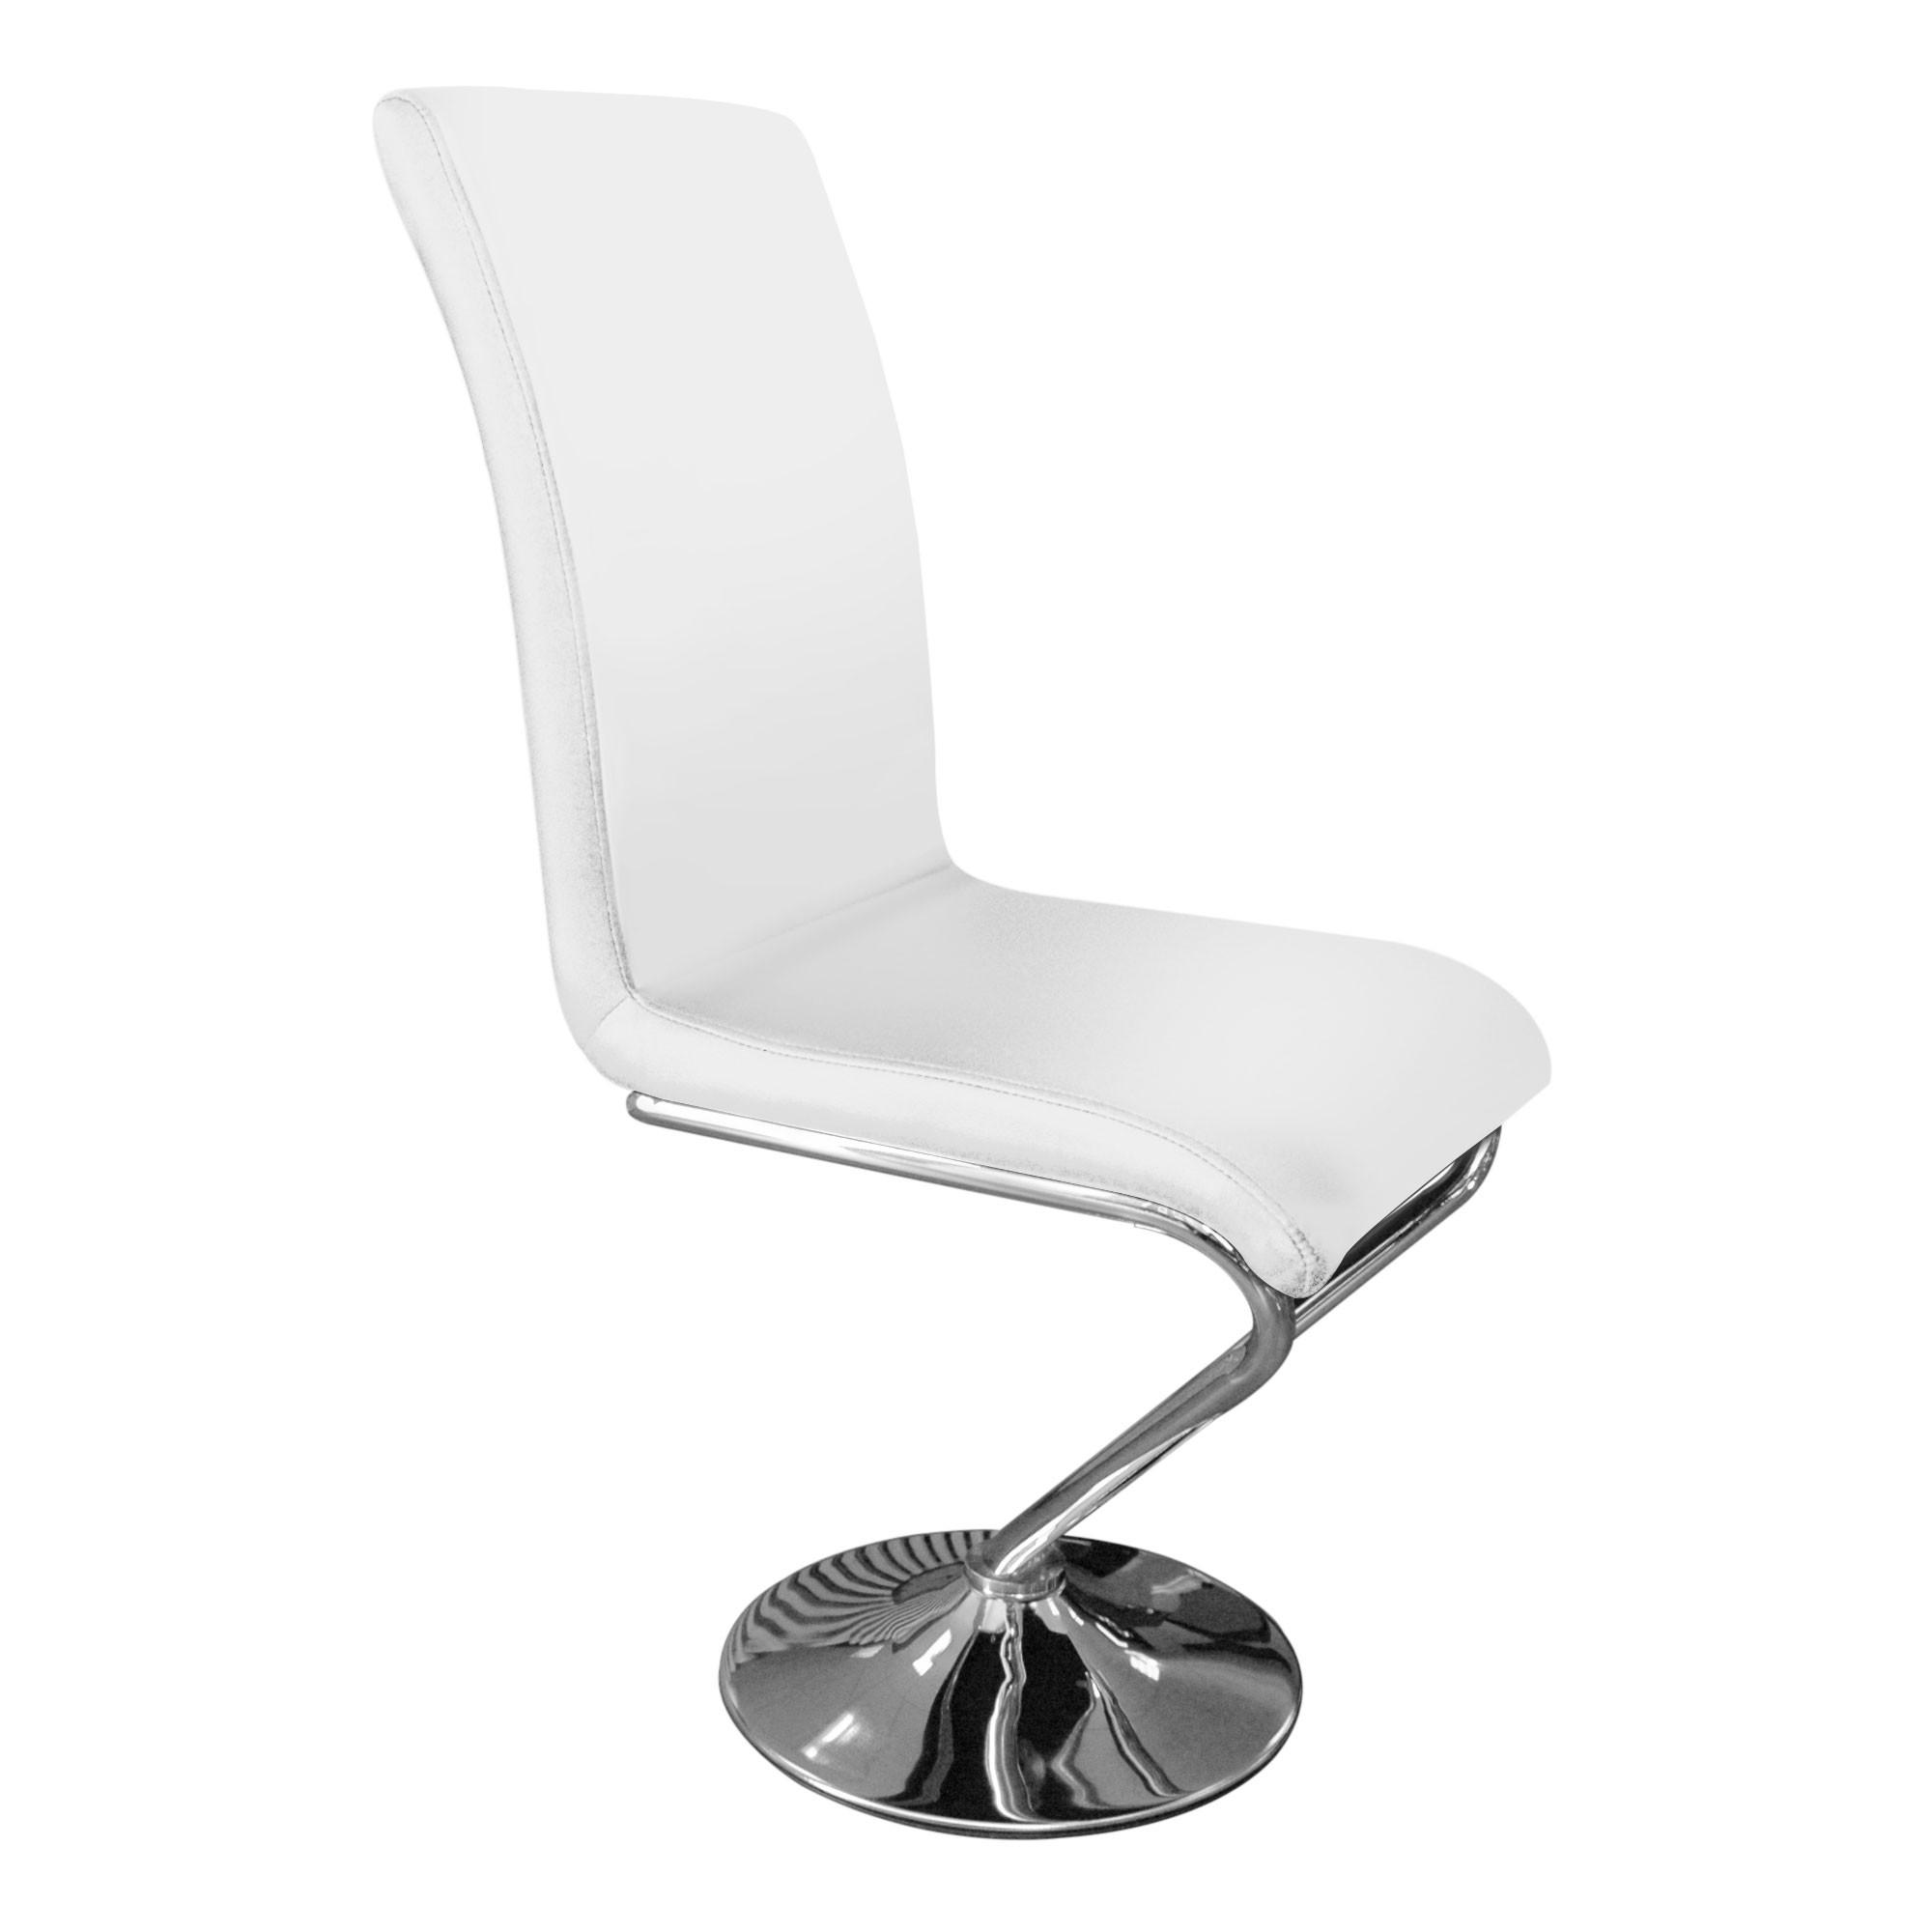 Chaise design simili Blanc Kazen  Lot de 6  LesTendances.fr